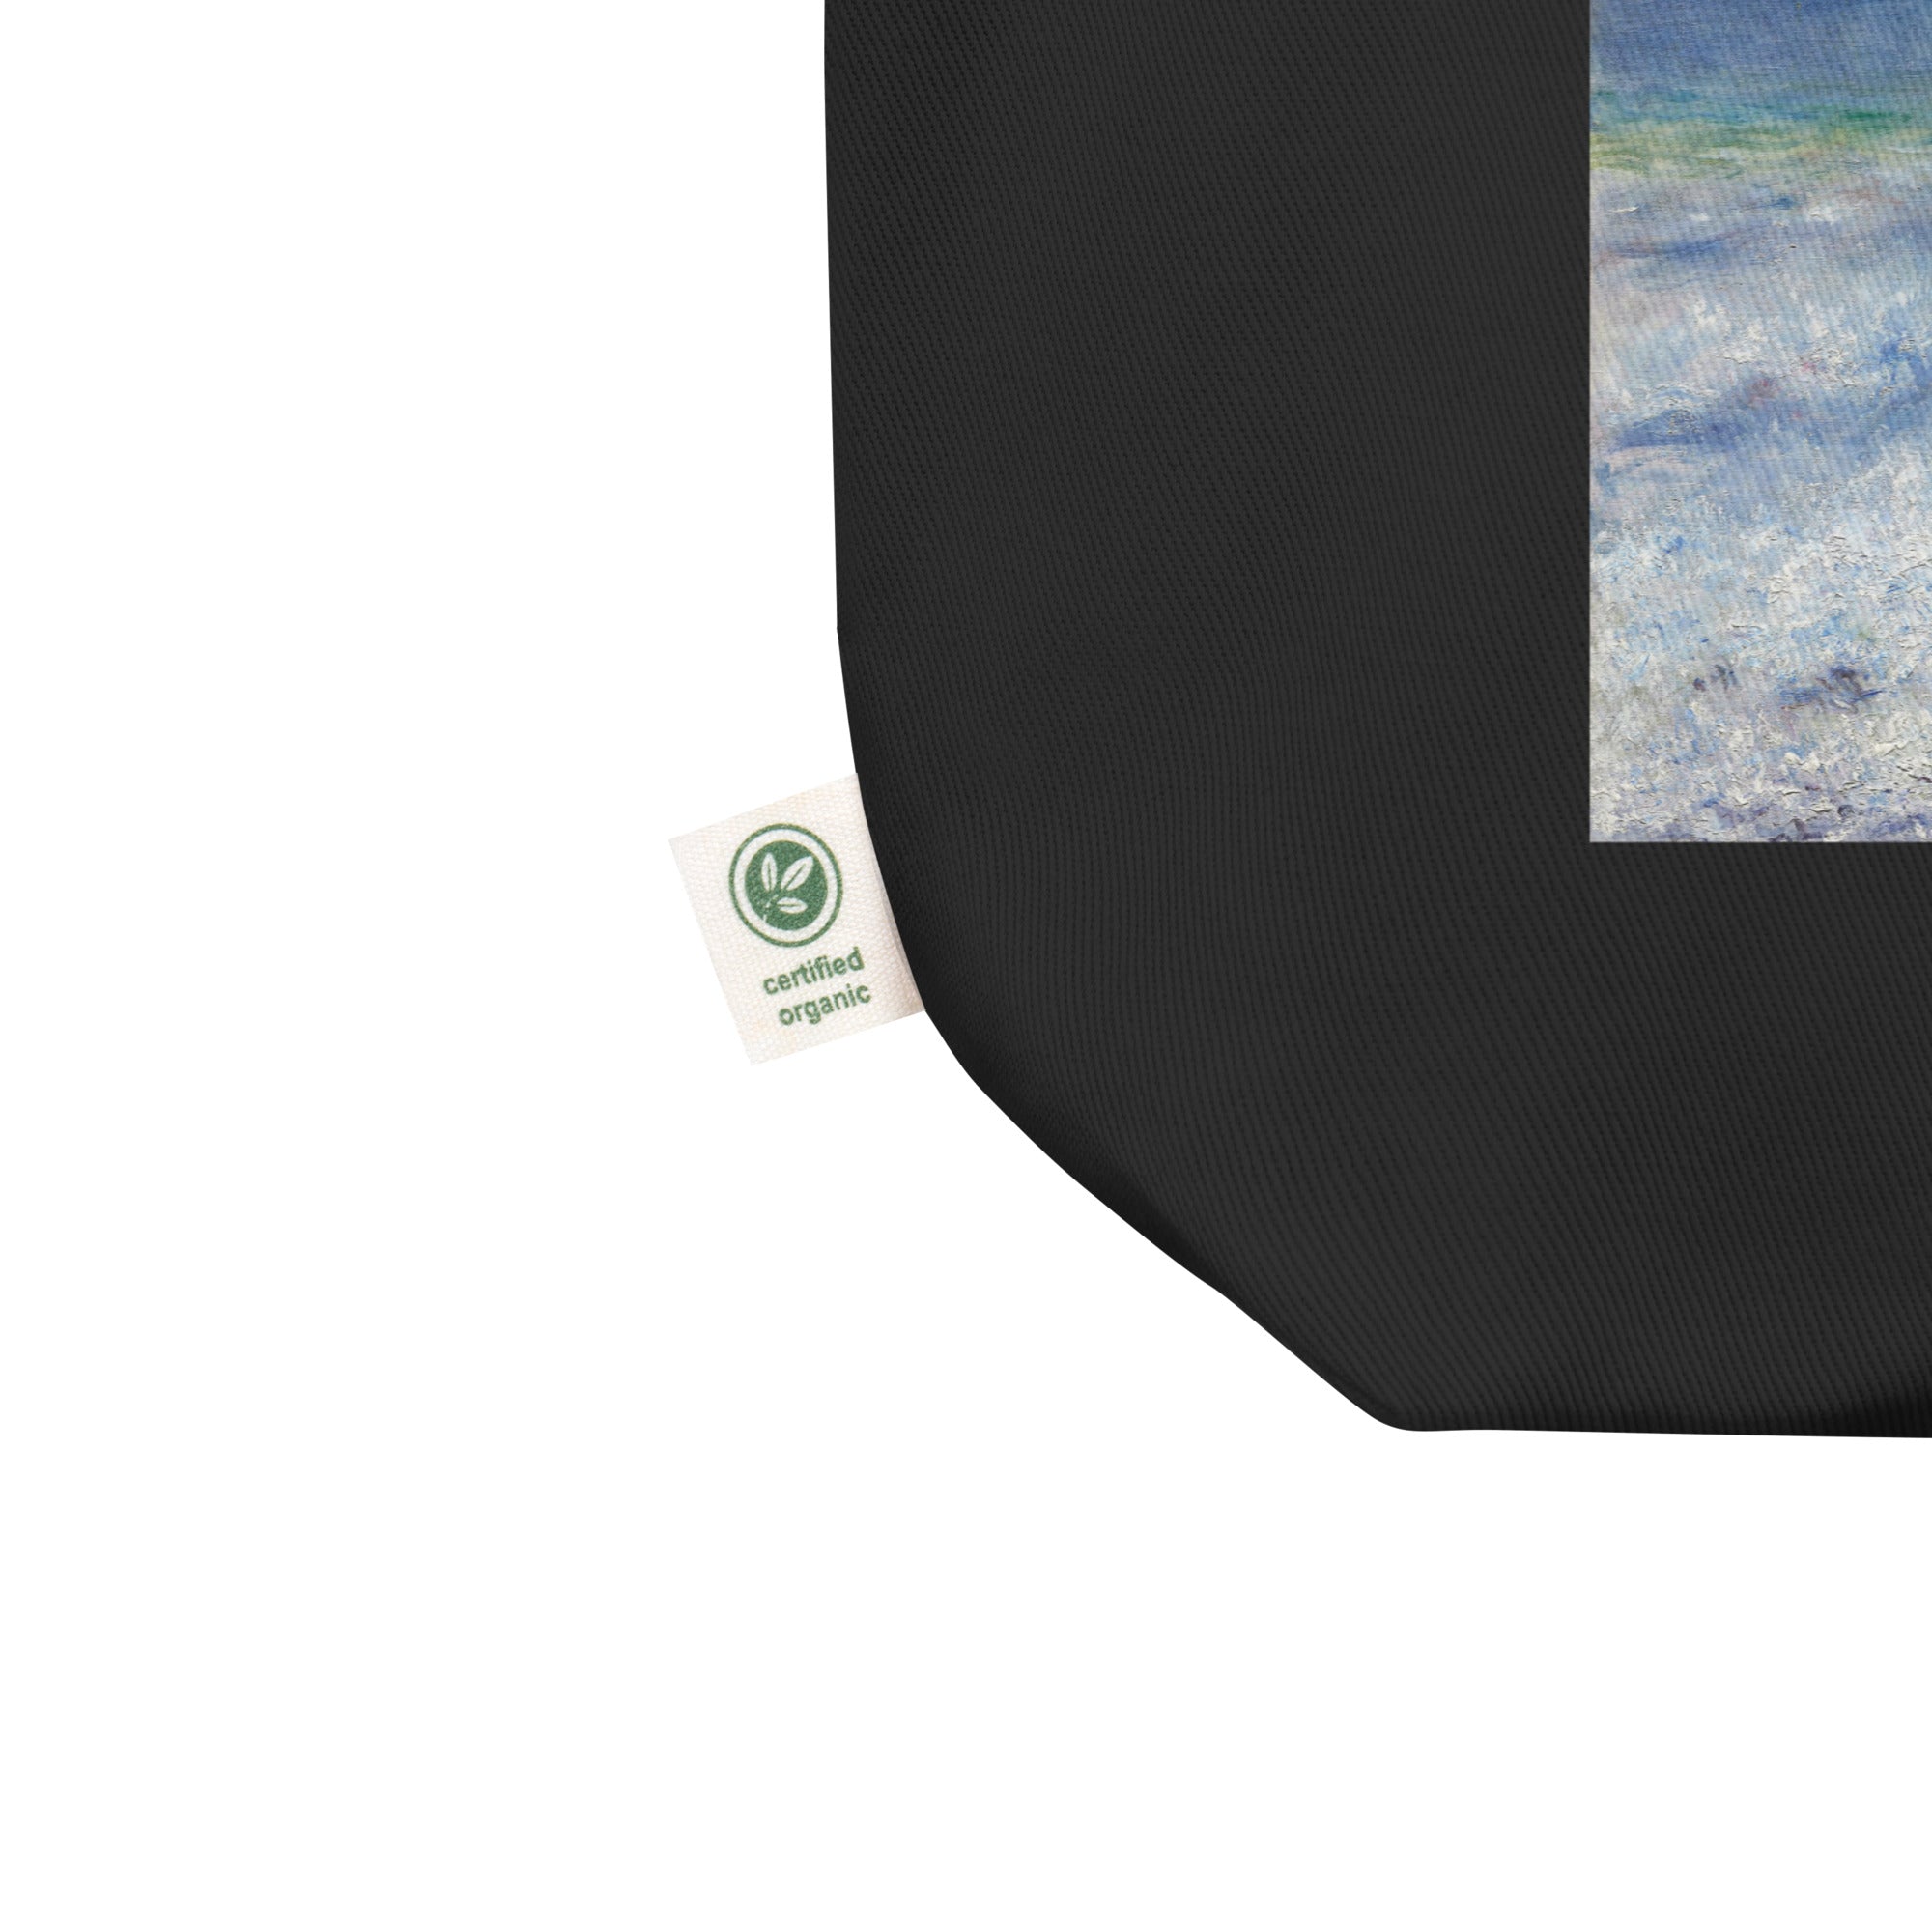 Pierre-Auguste Renoir 'Seascape' Famous Painting Totebag | Eco Friendly Art Tote Bag